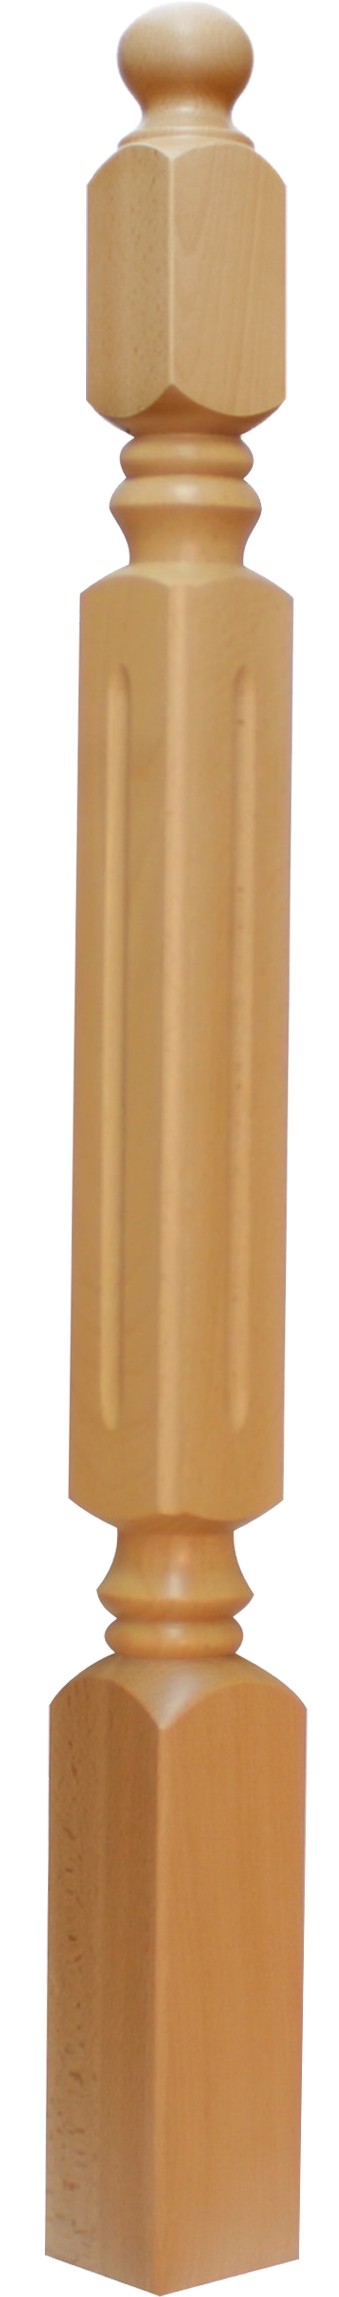 Słup balustradowy drewniany B.Sx-7